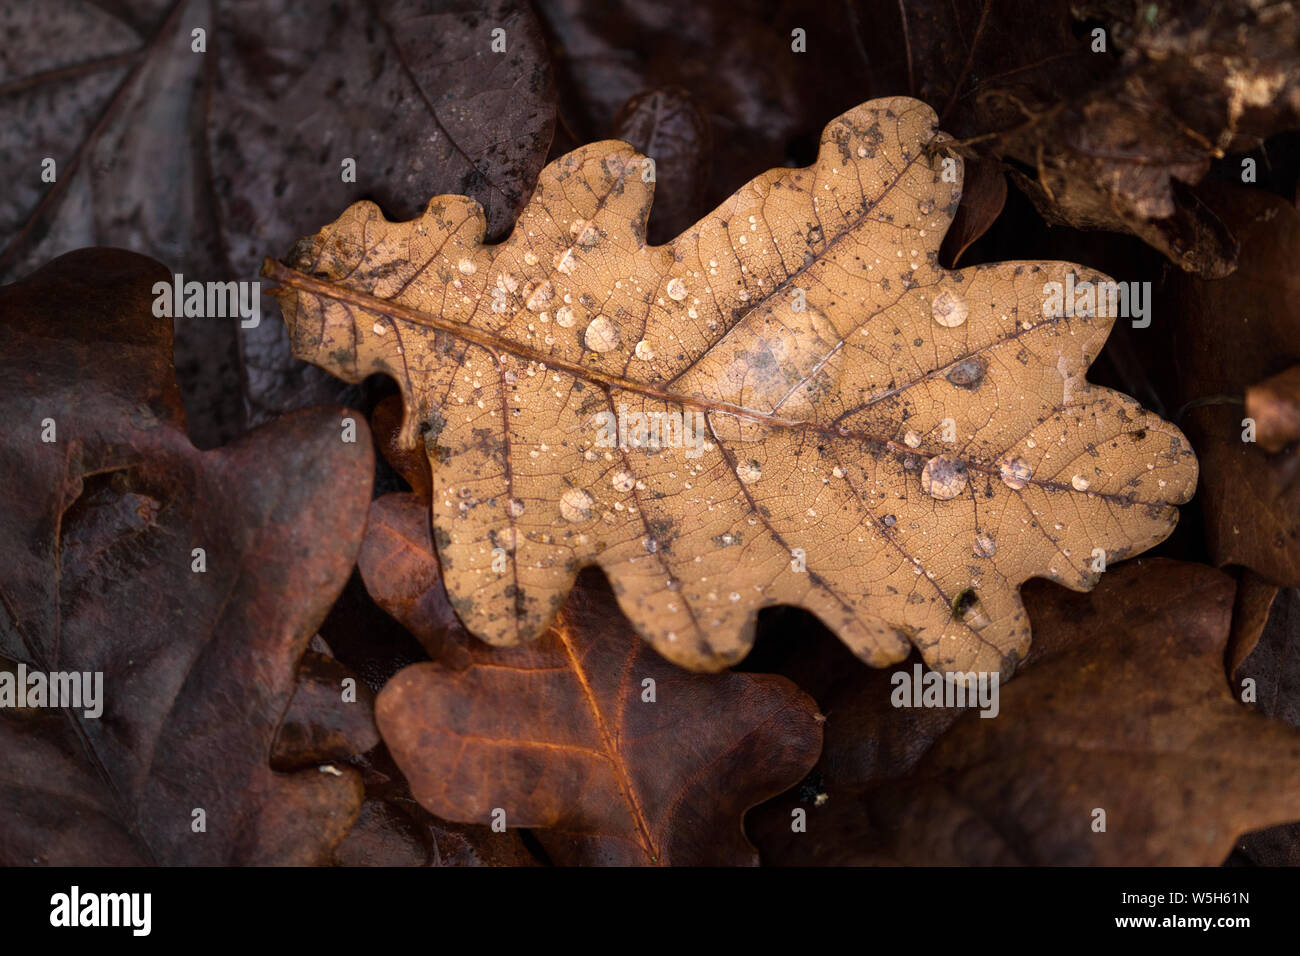 Single Brown gefallen Eichenlaub in unter anderem Blätter, mit Regentropfen auf seiner Oberfläche. Stockfoto